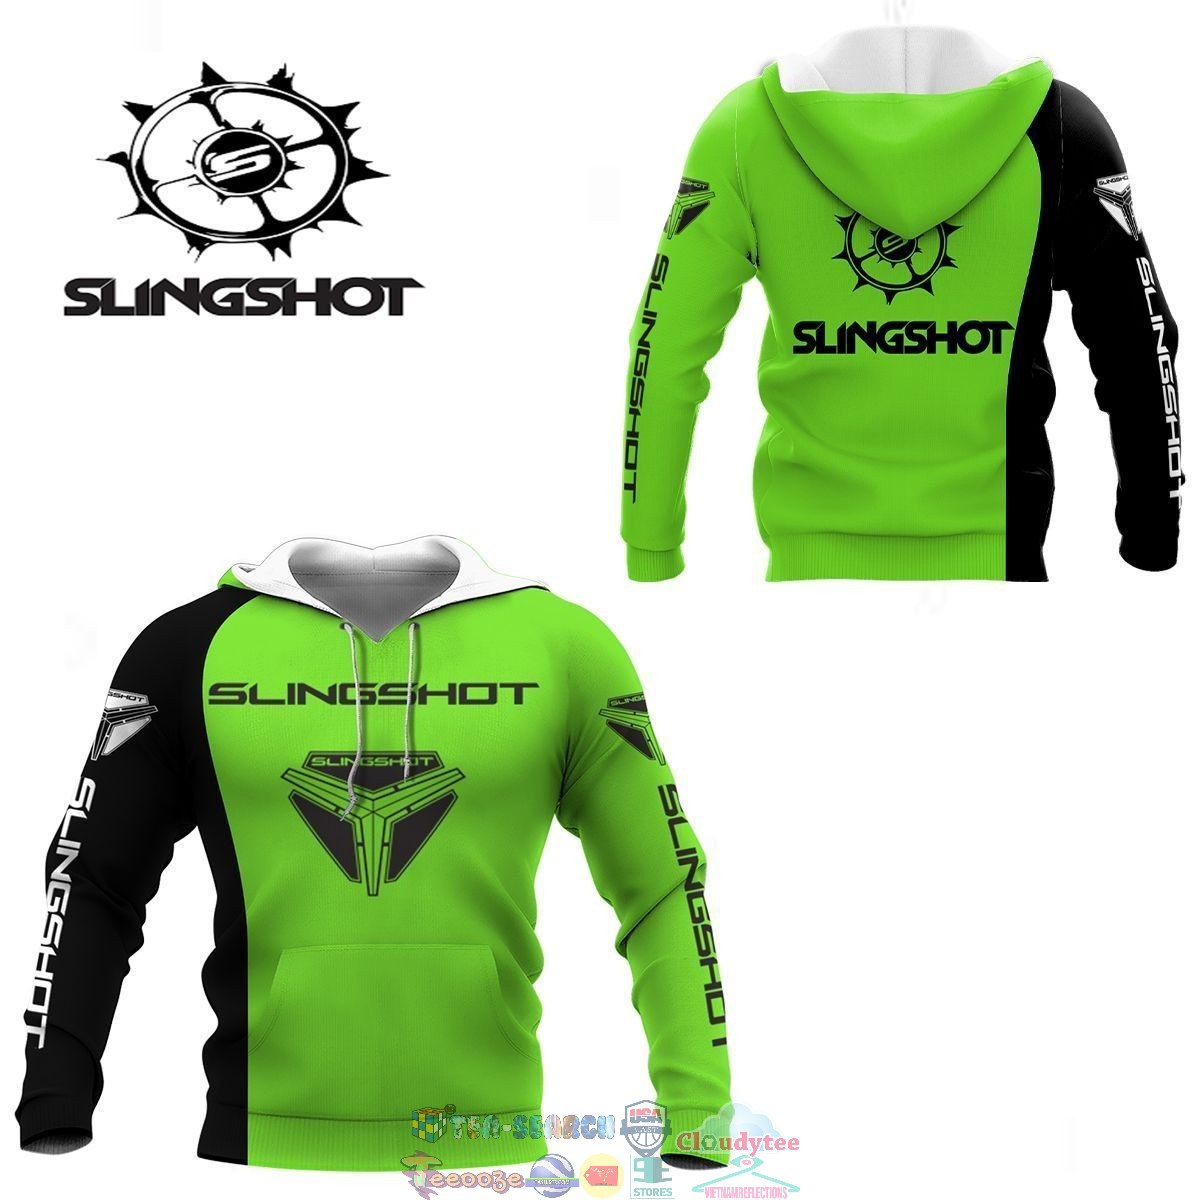 cRlgCFCb-TH090822-06xxxSlingshot-ver-1-3D-hoodie-and-t-shirt3.jpg